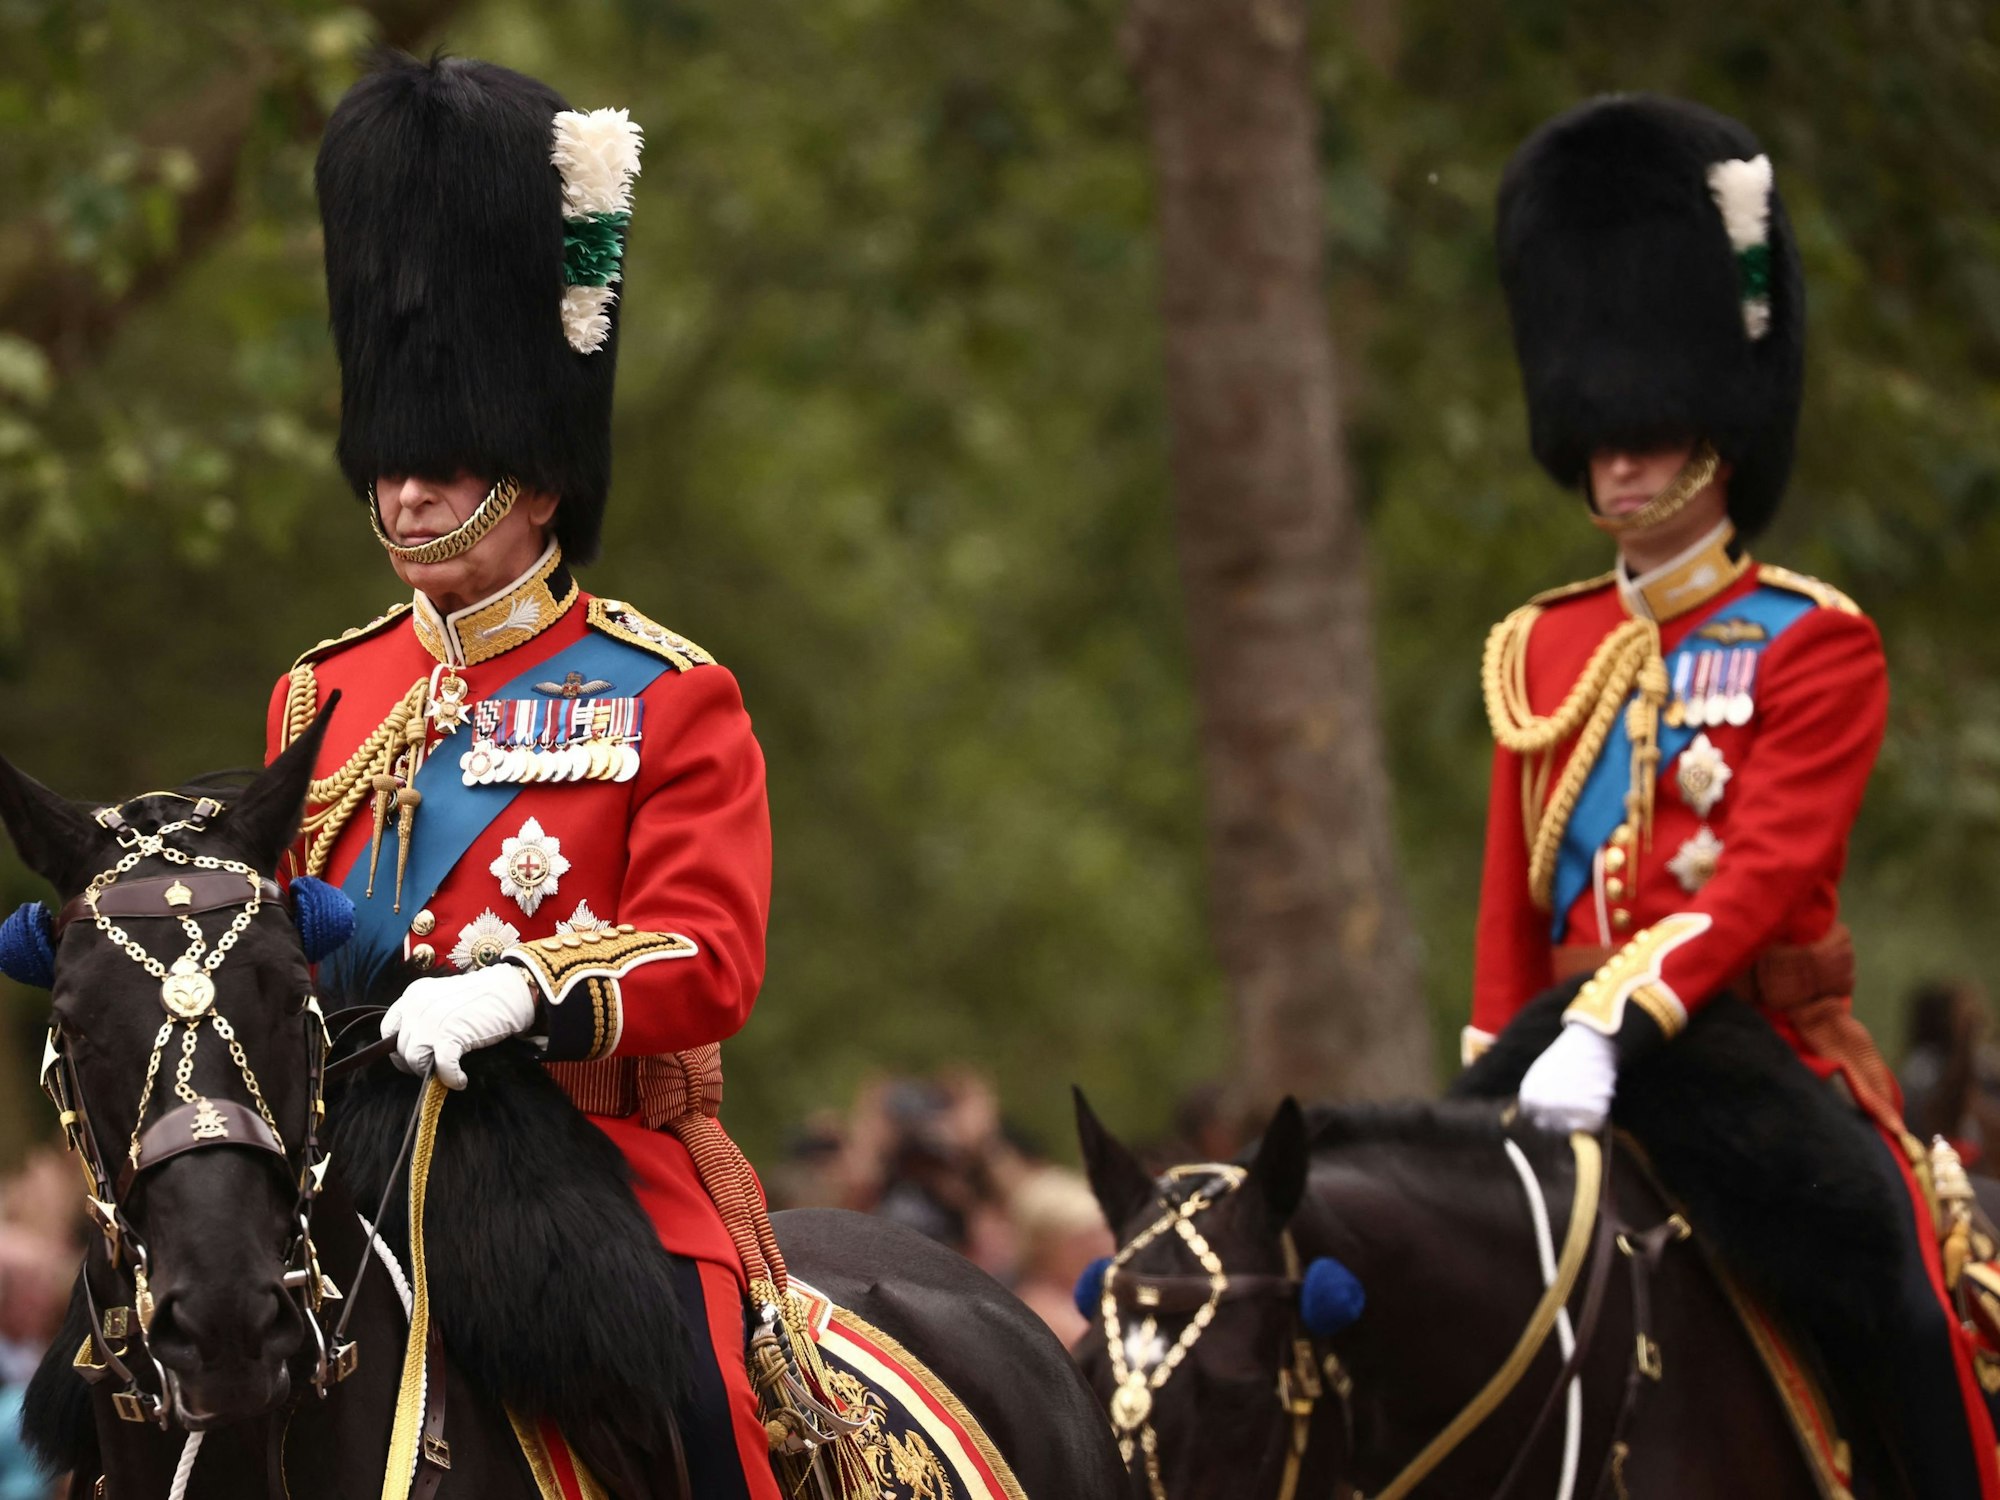 König Charles III. und Kronprinz William reiten während der „Trooping the Colour“-Zeremonie auf der Horse Guards Parade.